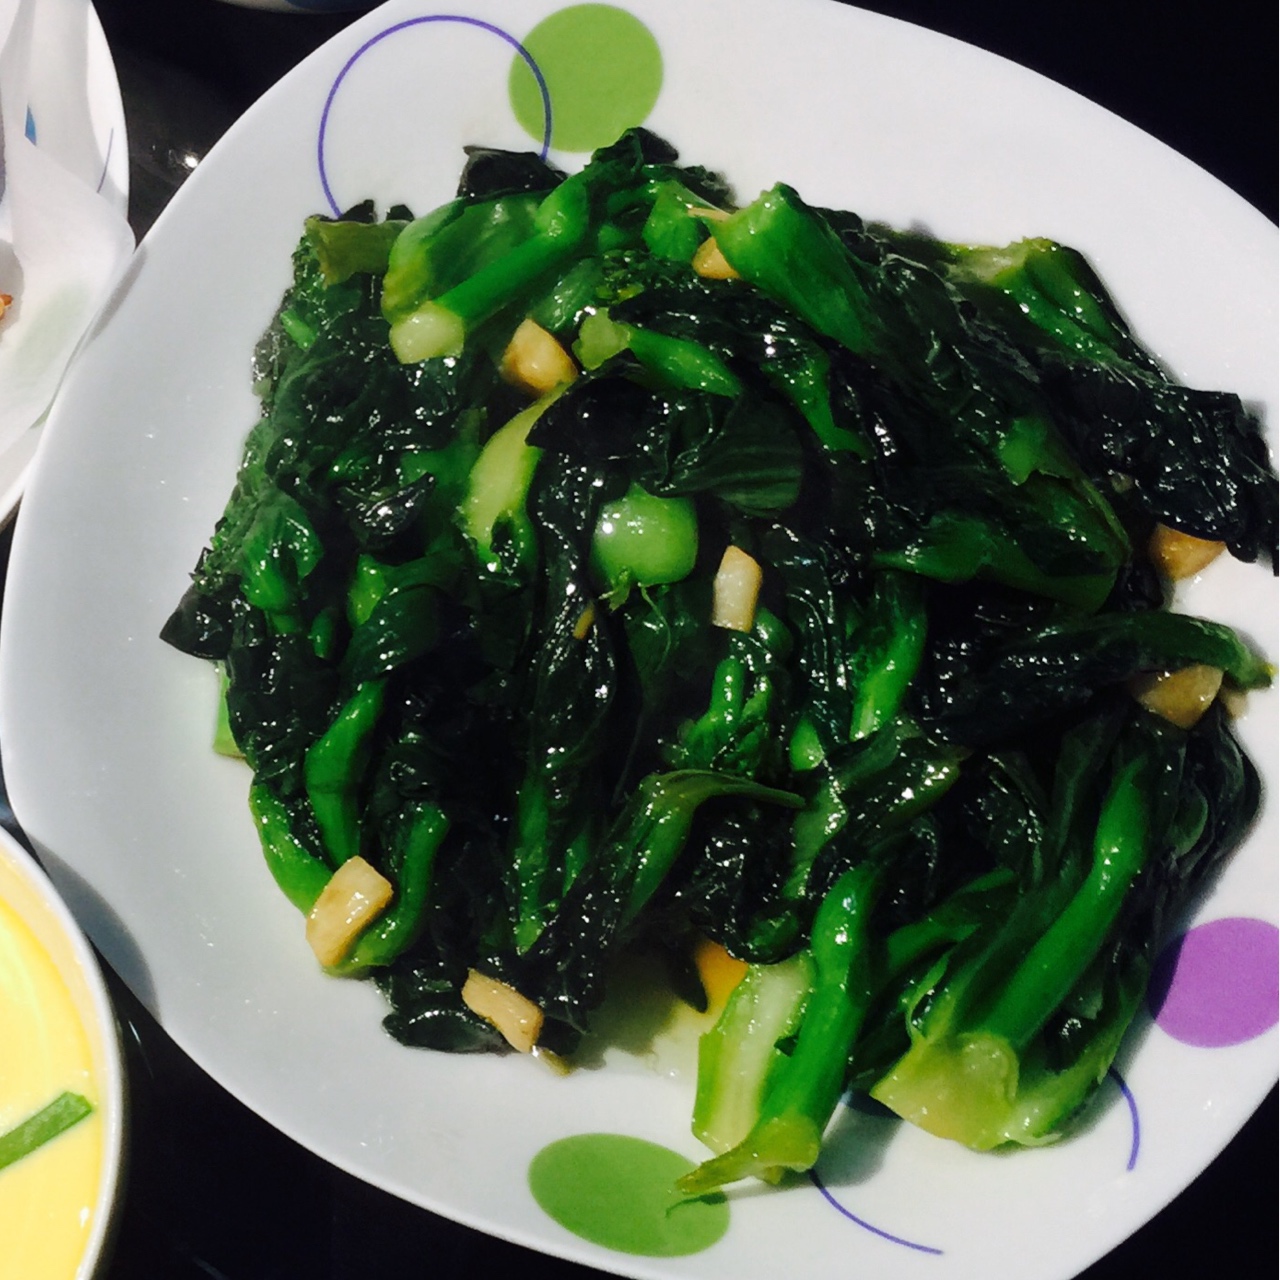 蚝油菜苔